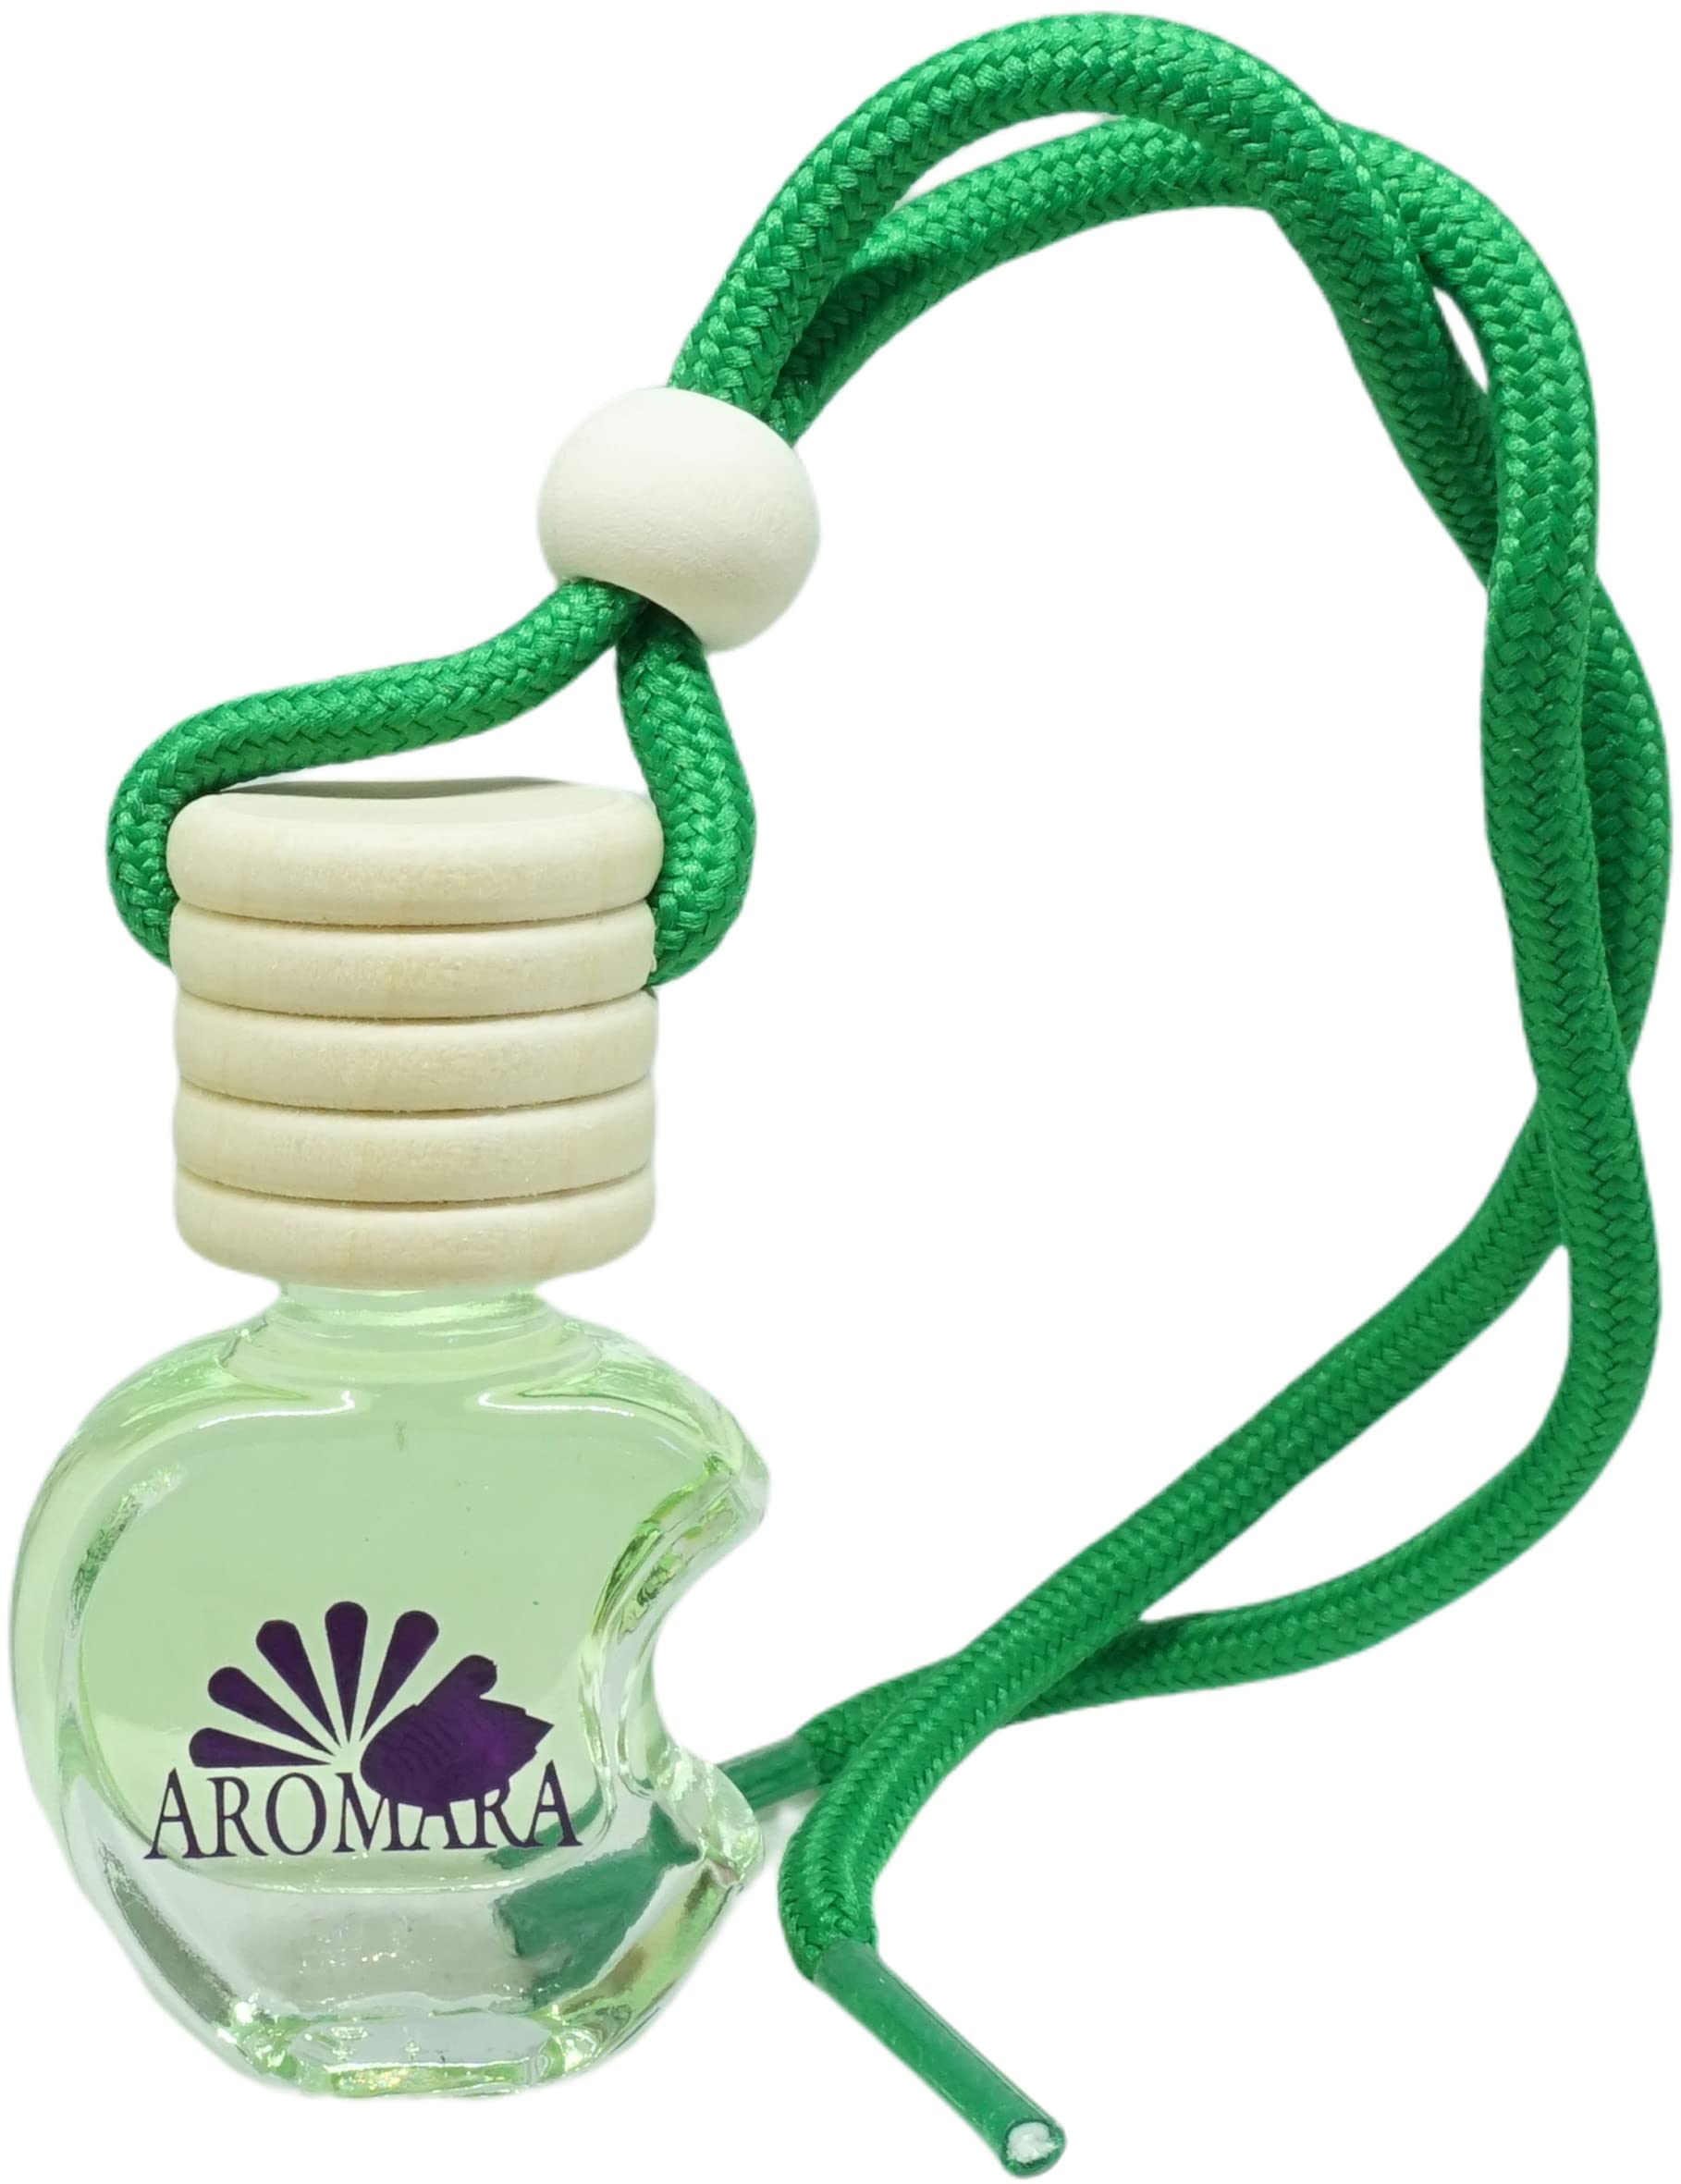 Aromara Autoduft Green Apple Lufterfrischer Duftspender frischer Apfelduft von NaturGut